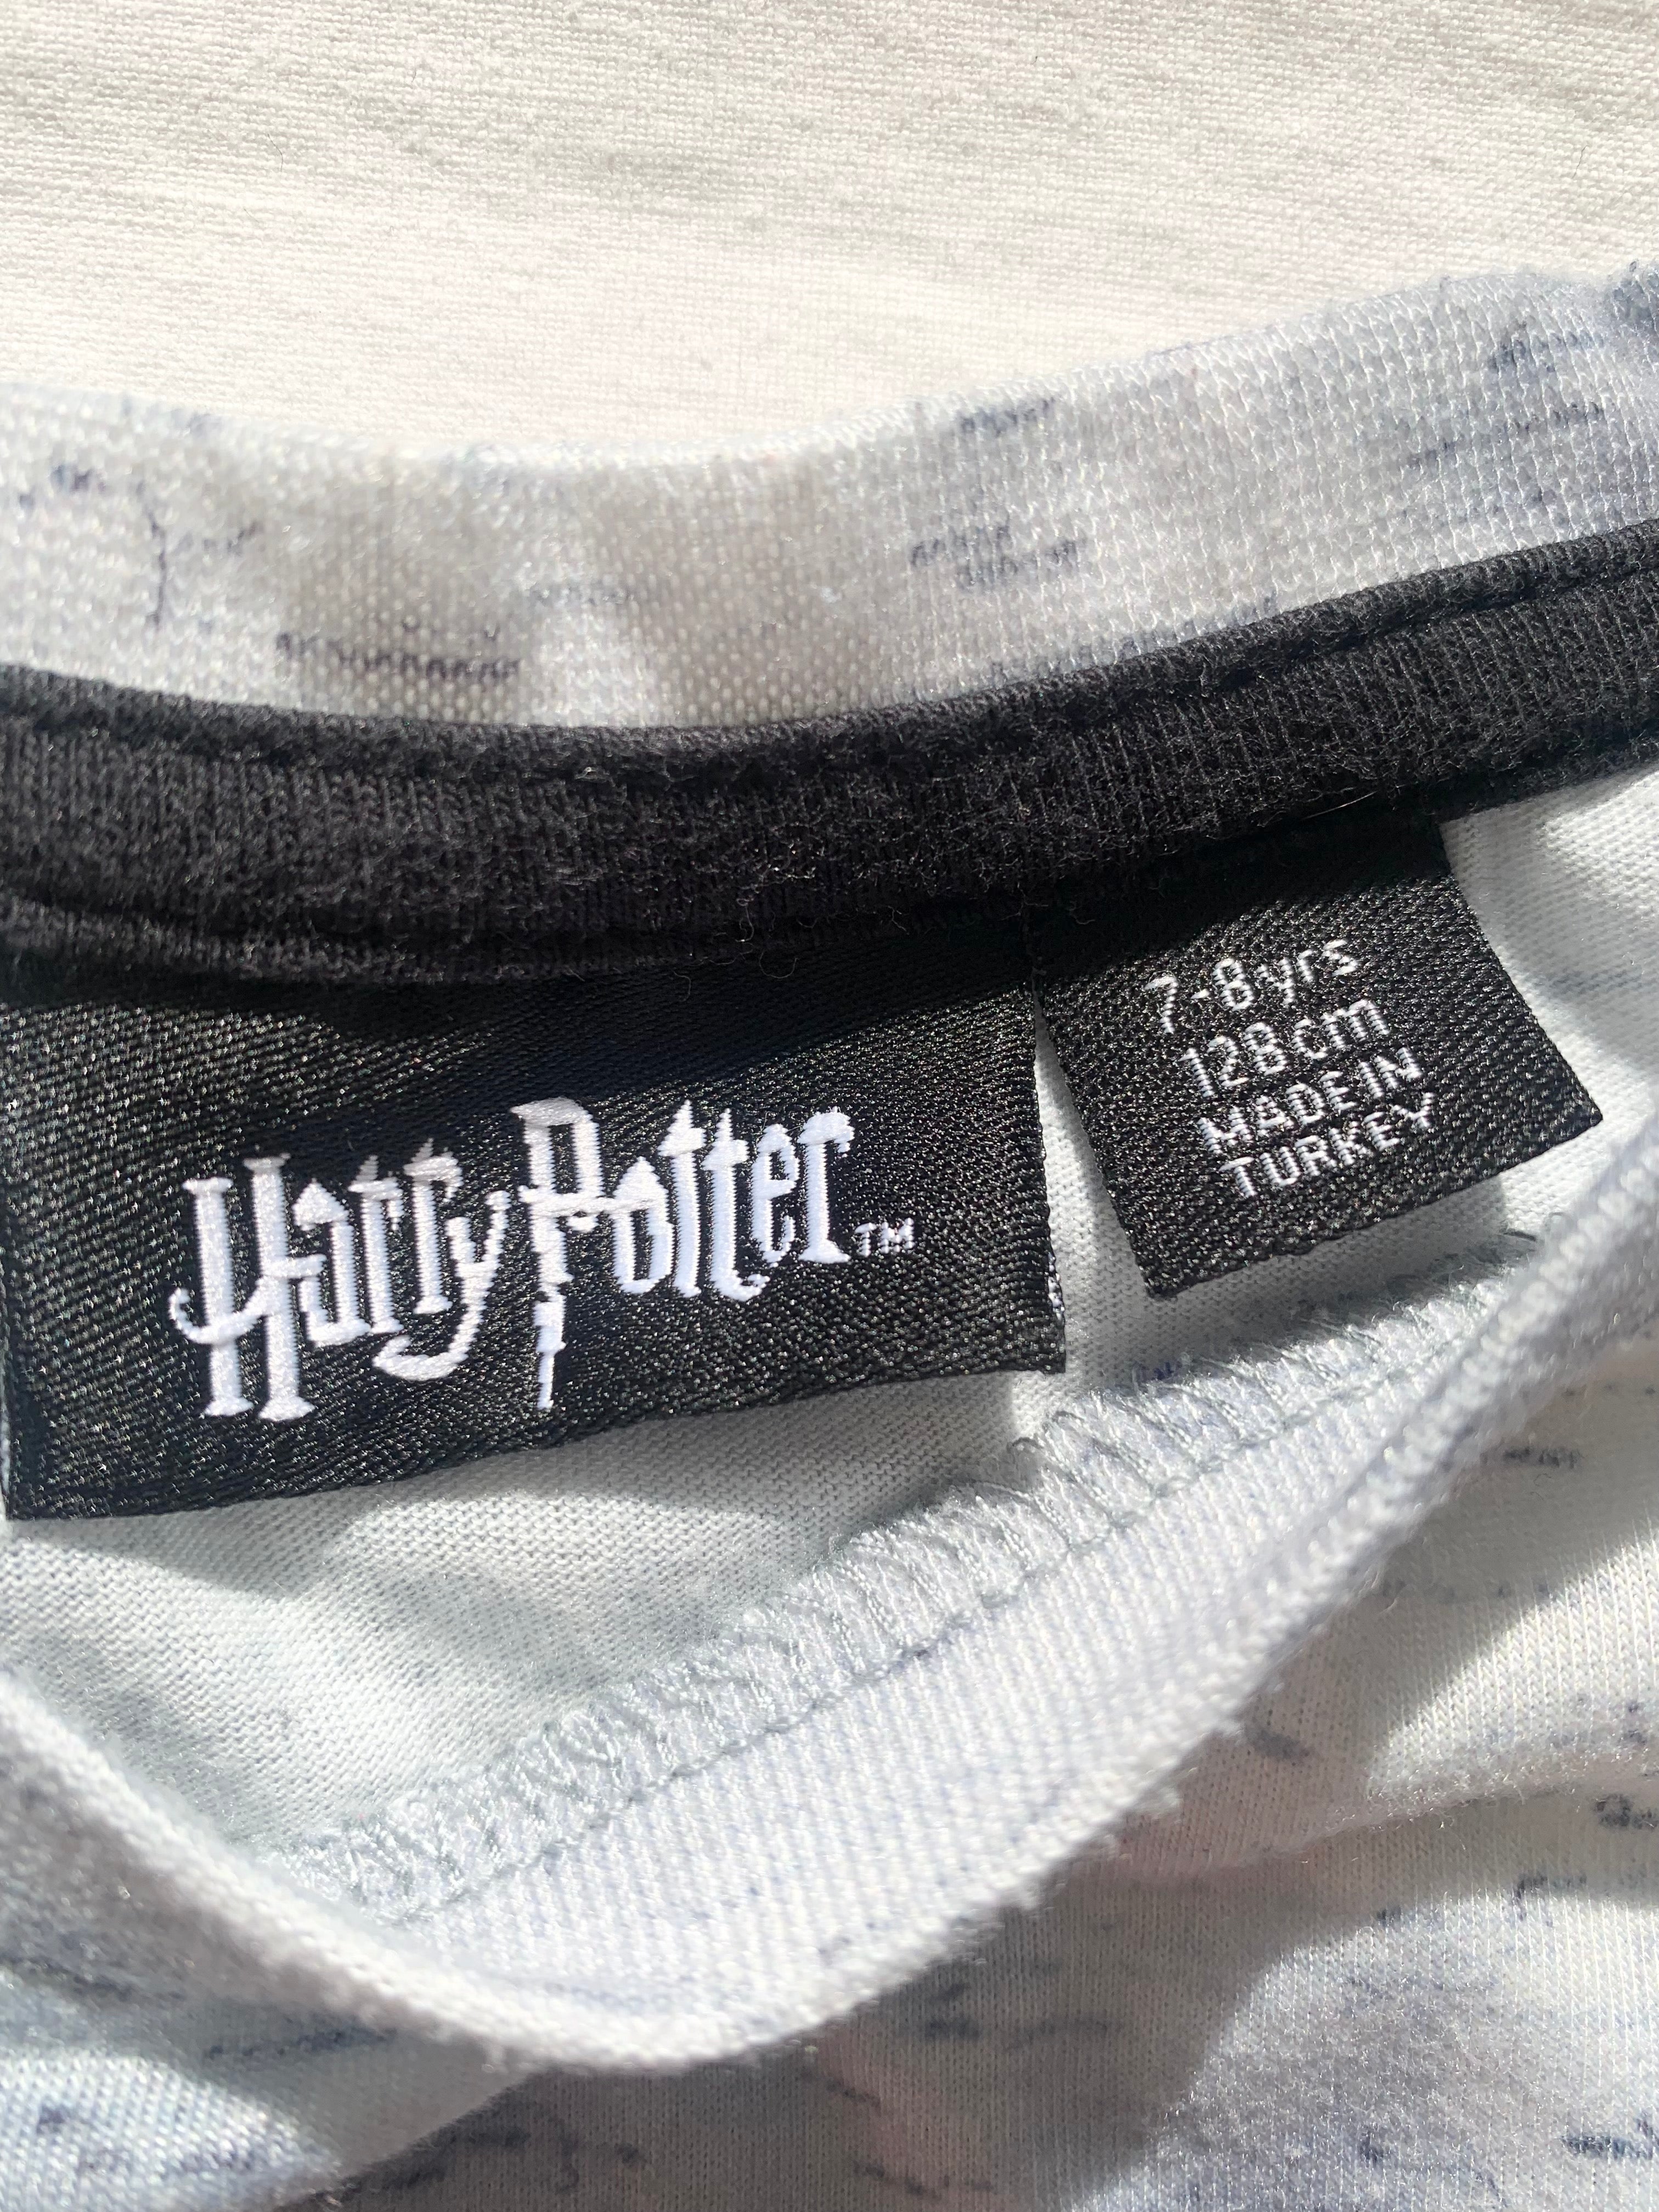 T-shirt för Harry Potter-fantasten, stl 128